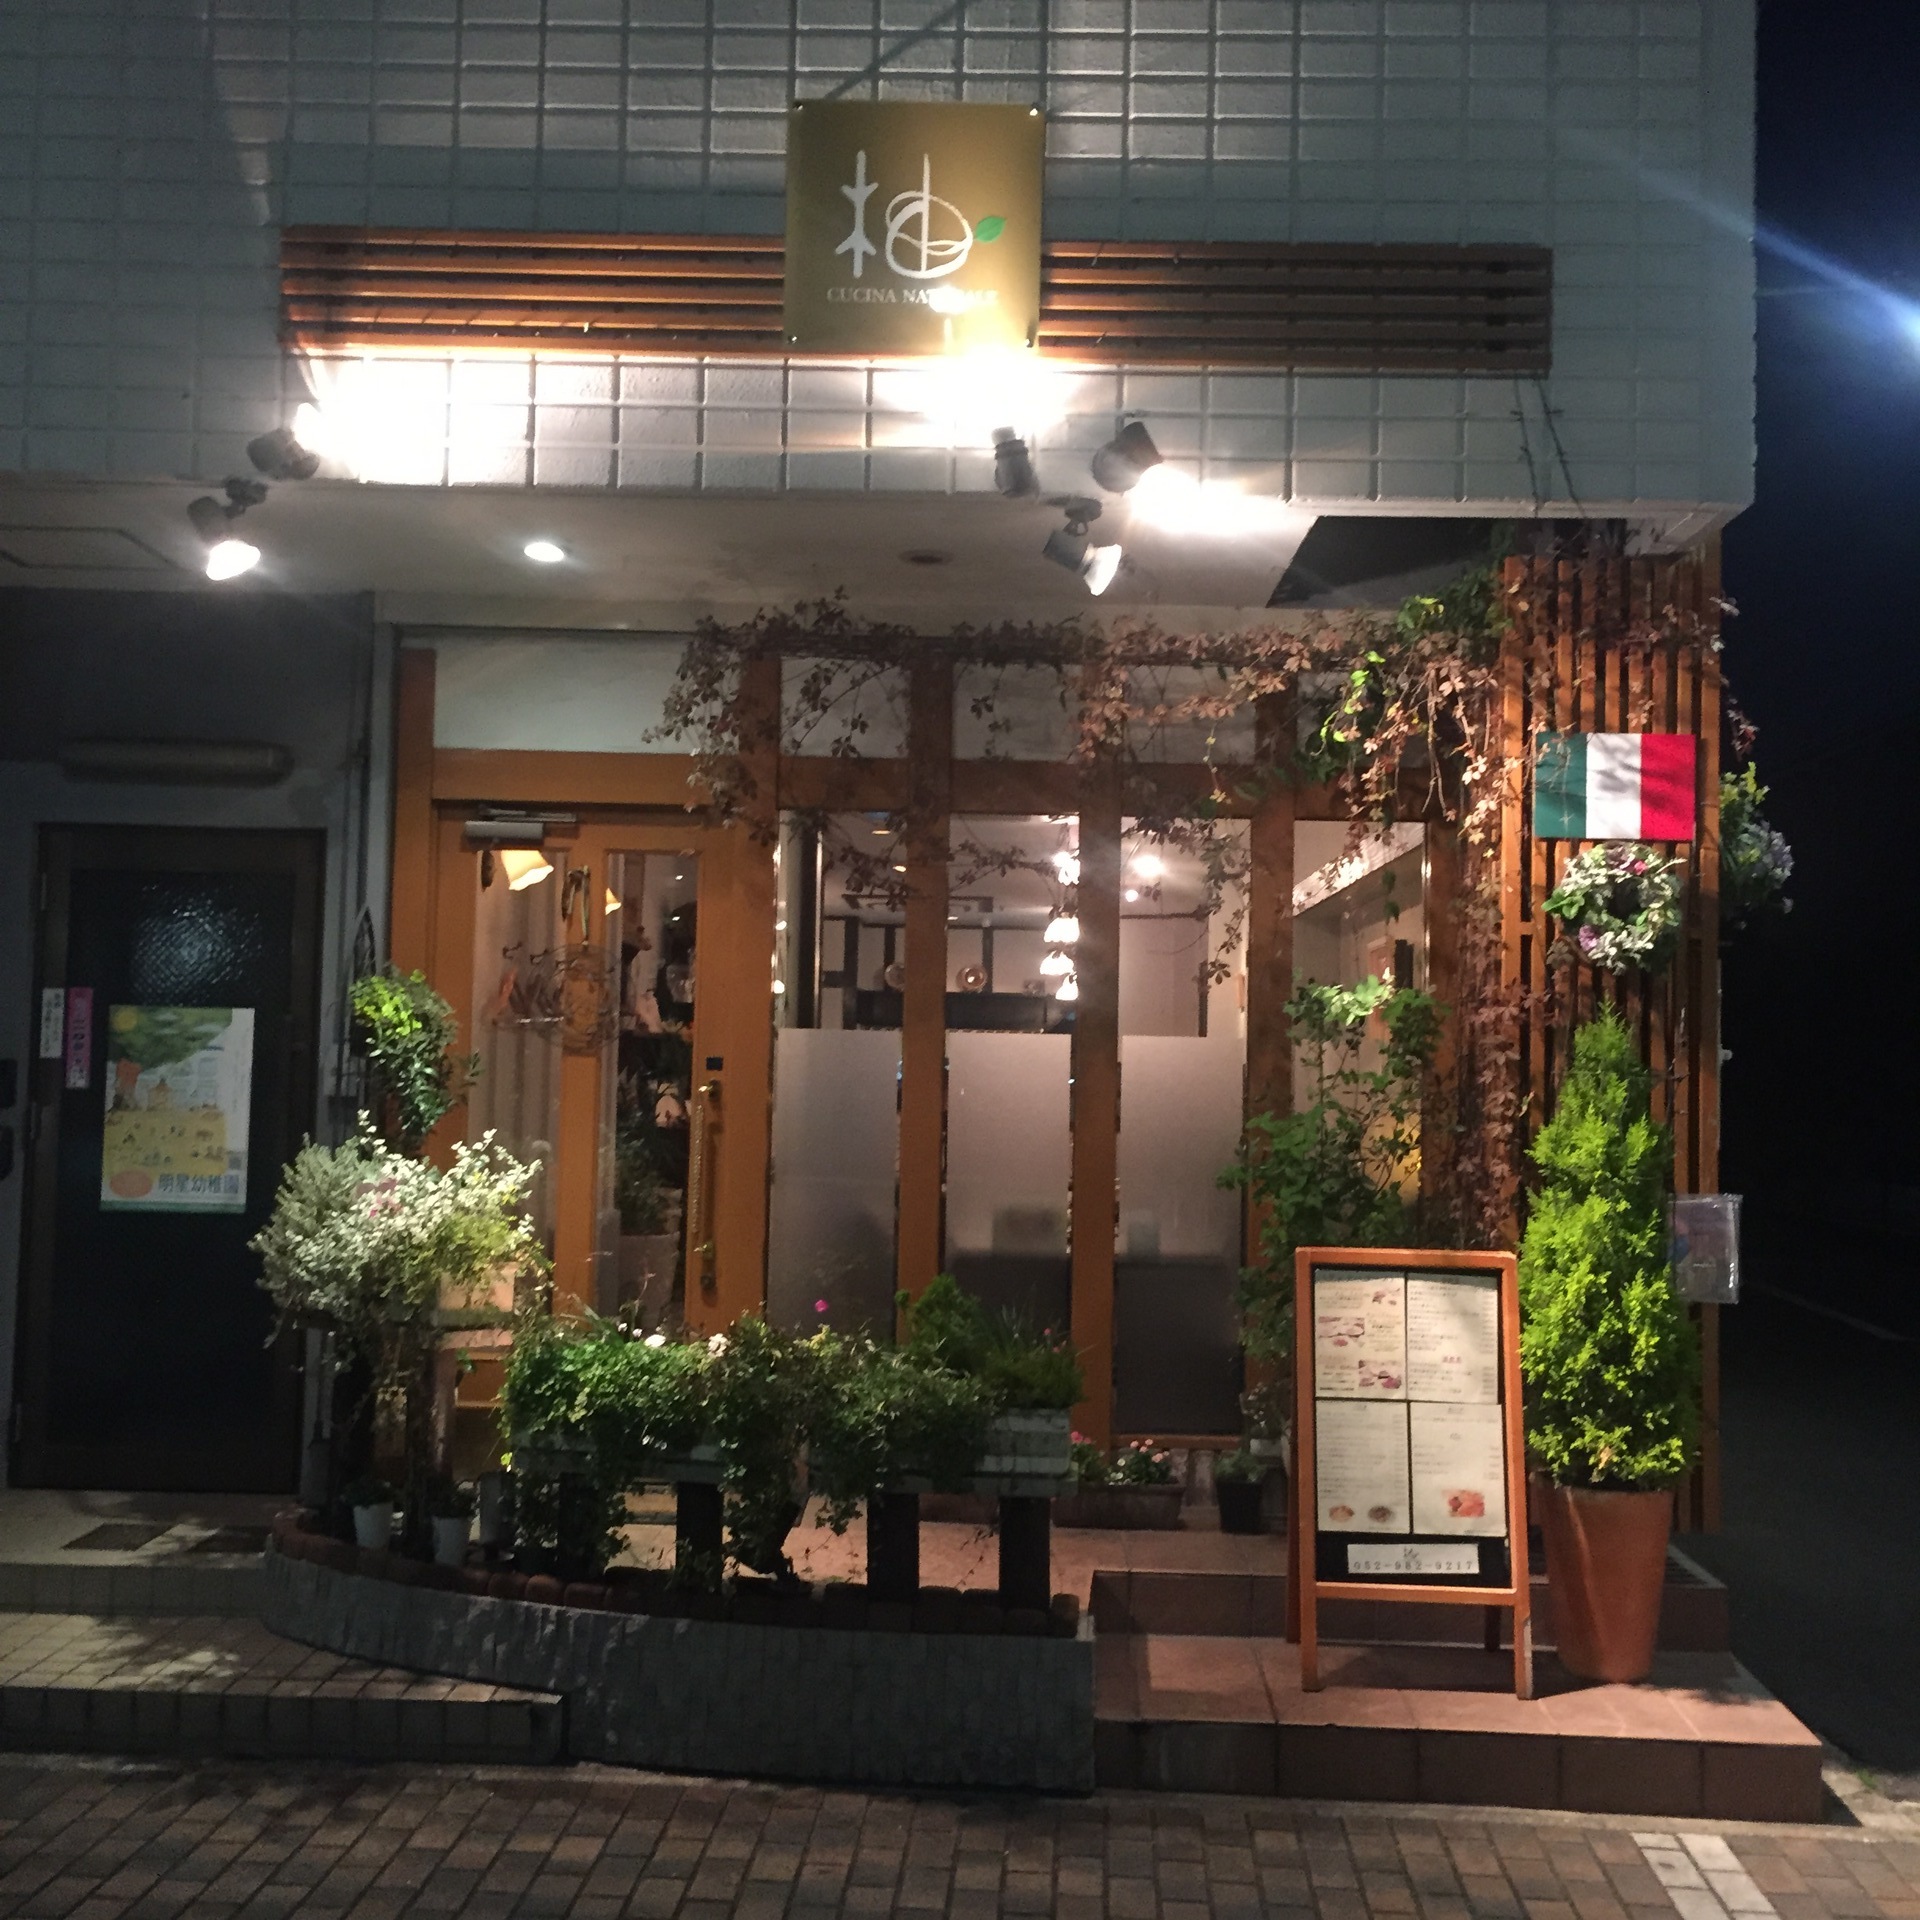 名古屋のオシャレでおいしい飲食店やバー探し 名古屋市東区のイタリアン料理 柚 Cucina Naturale ゆず クッチーナ ナチュラーレ